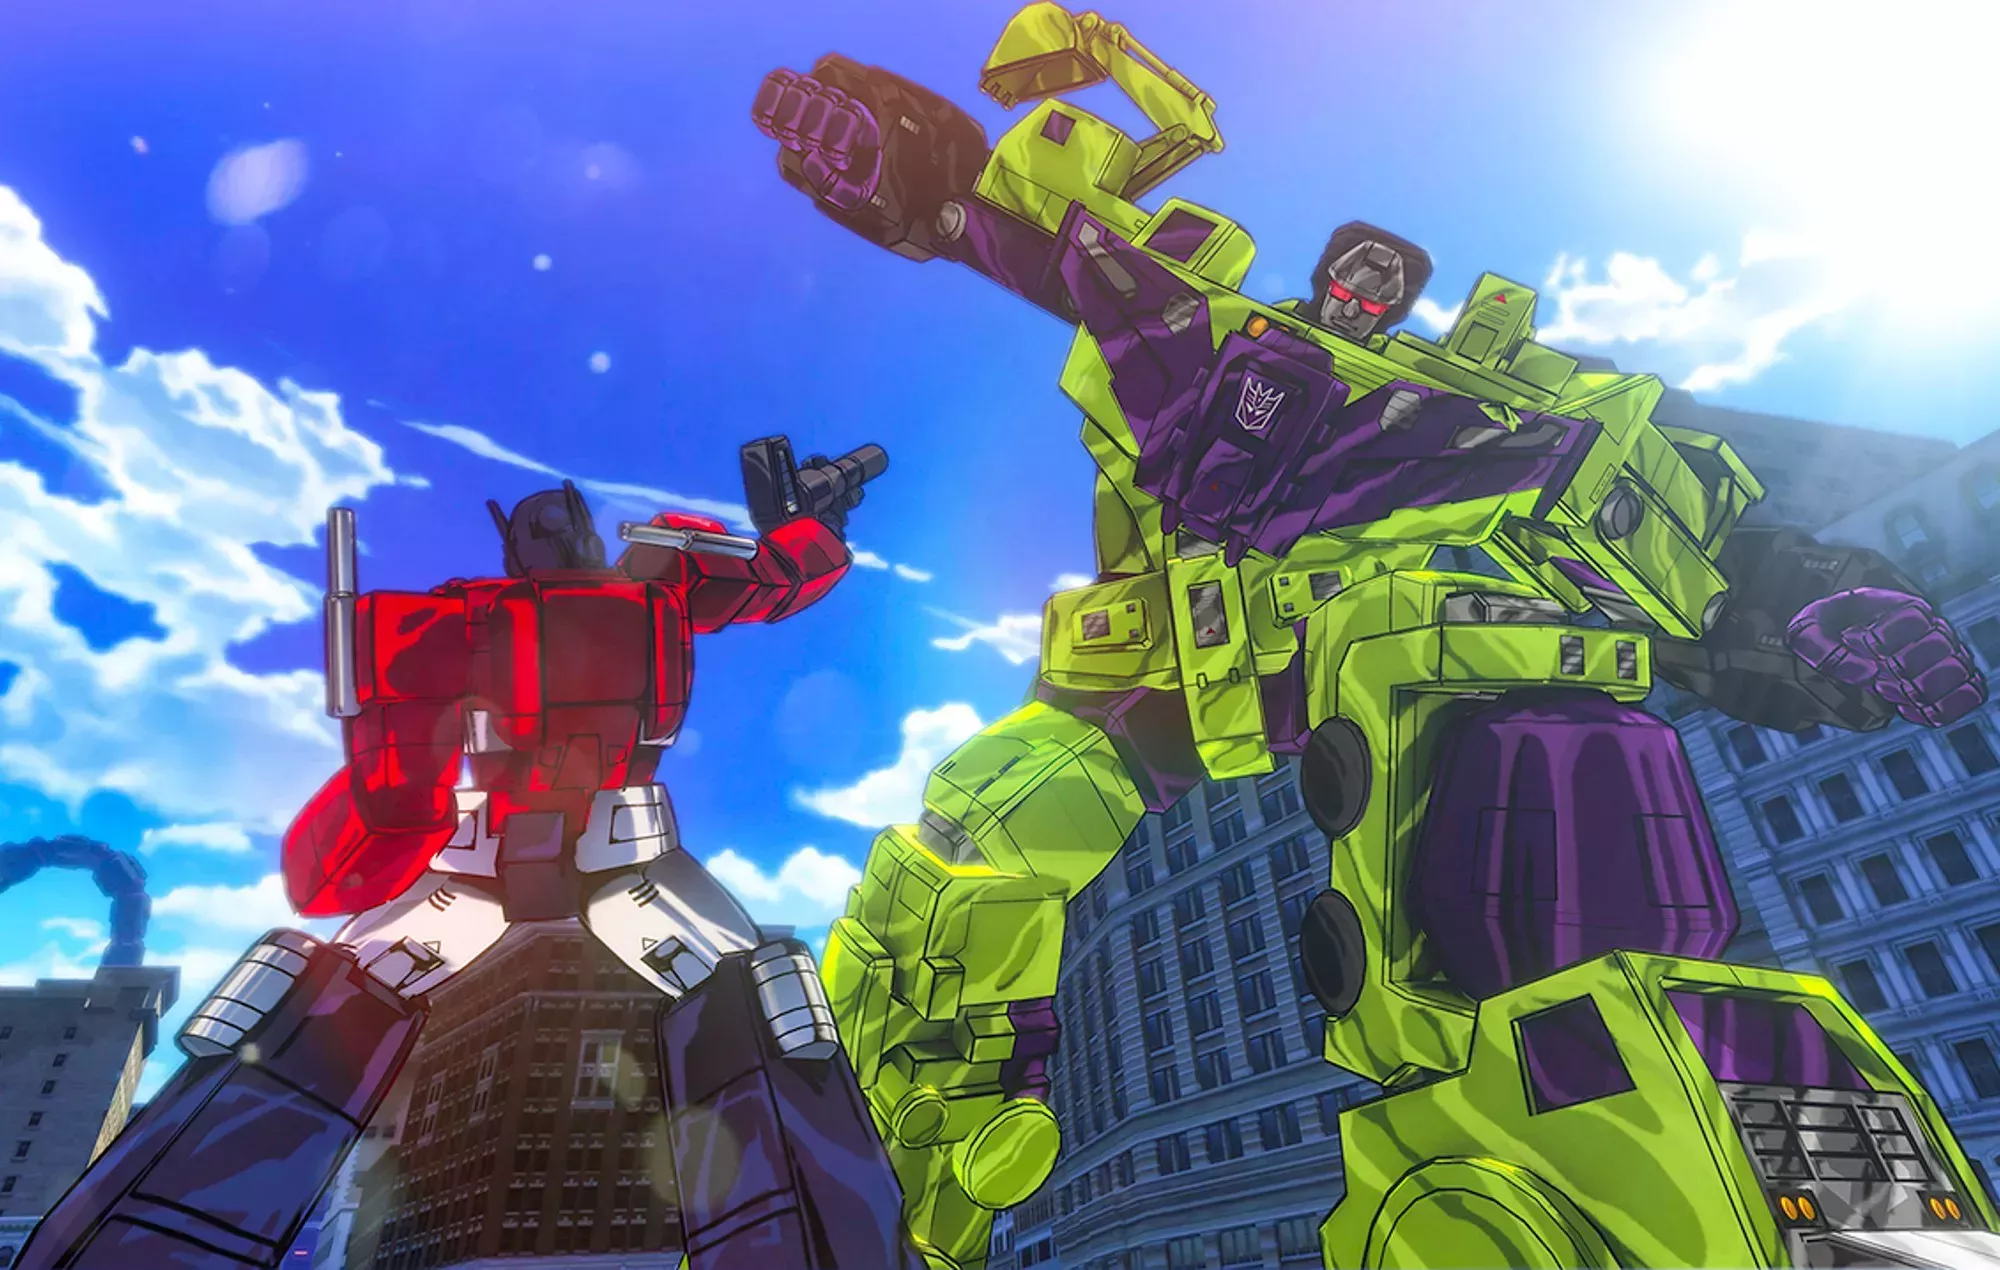 Los juegos de 'Transformers' de Activision no han desaparecido, aclara Hasbro